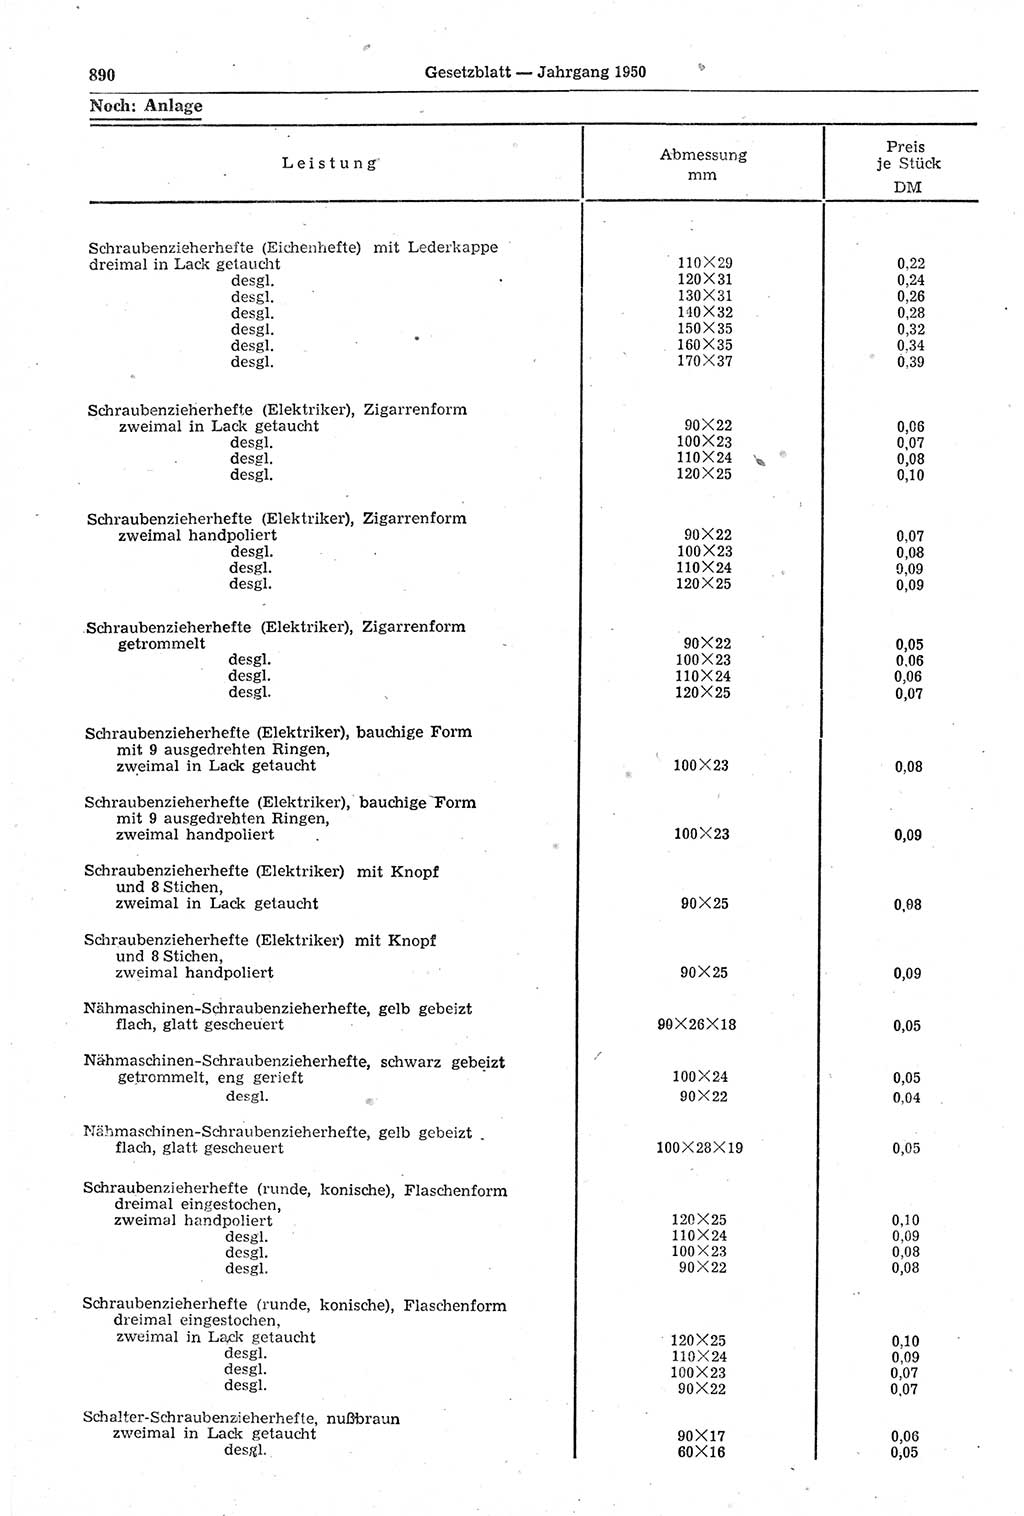 Gesetzblatt (GBl.) der Deutschen Demokratischen Republik (DDR) 1950, Seite 890 (GBl. DDR 1950, S. 890)